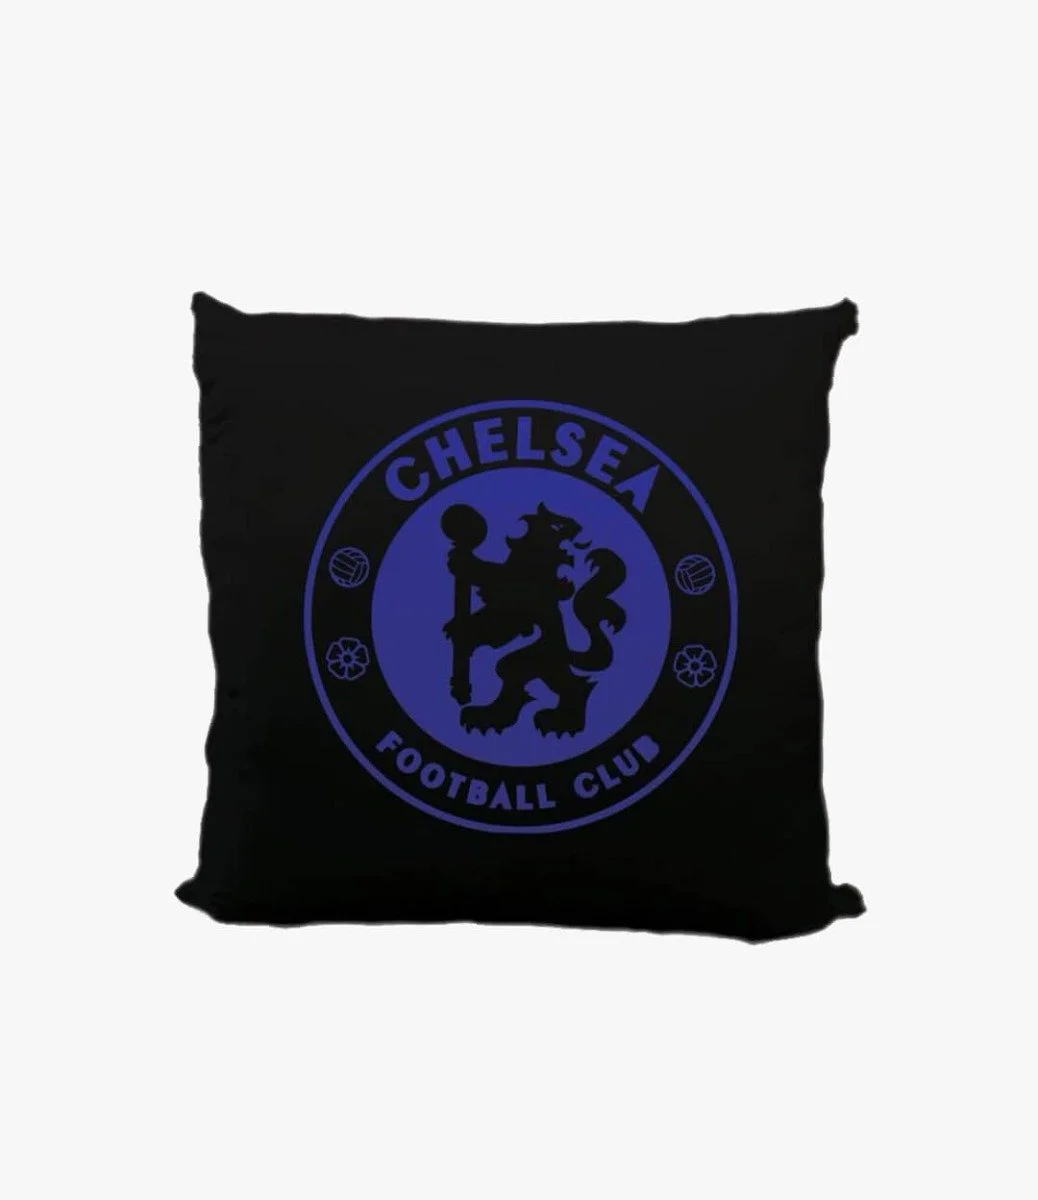 Black Chelsea Pillow Case